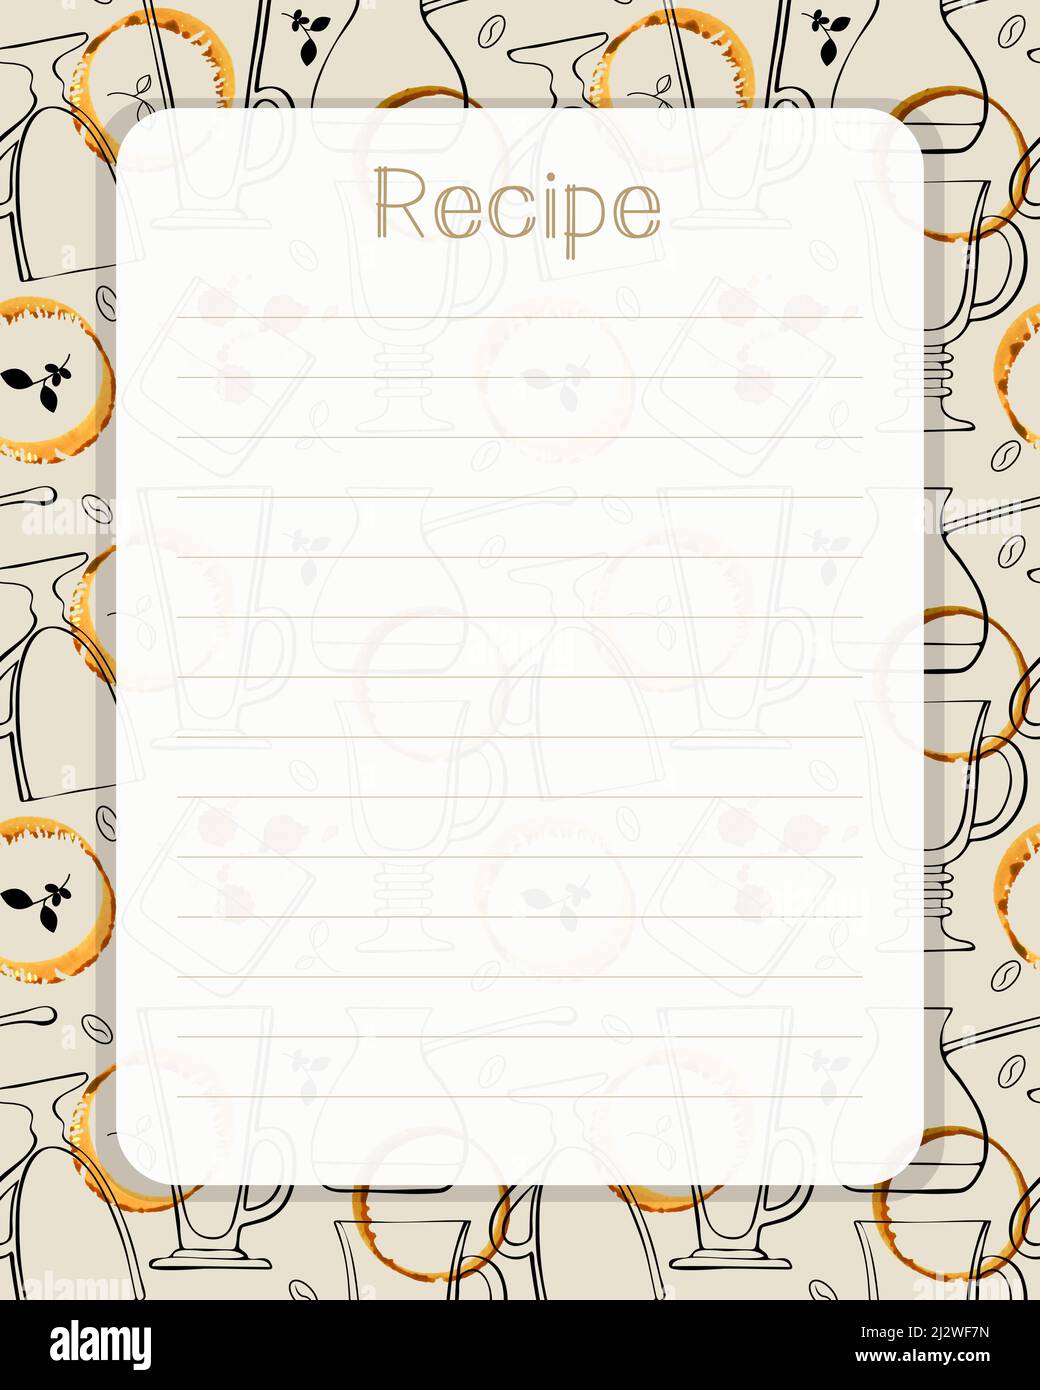 libro de recetas en blanco 23301331 Foto de stock en Vecteezy